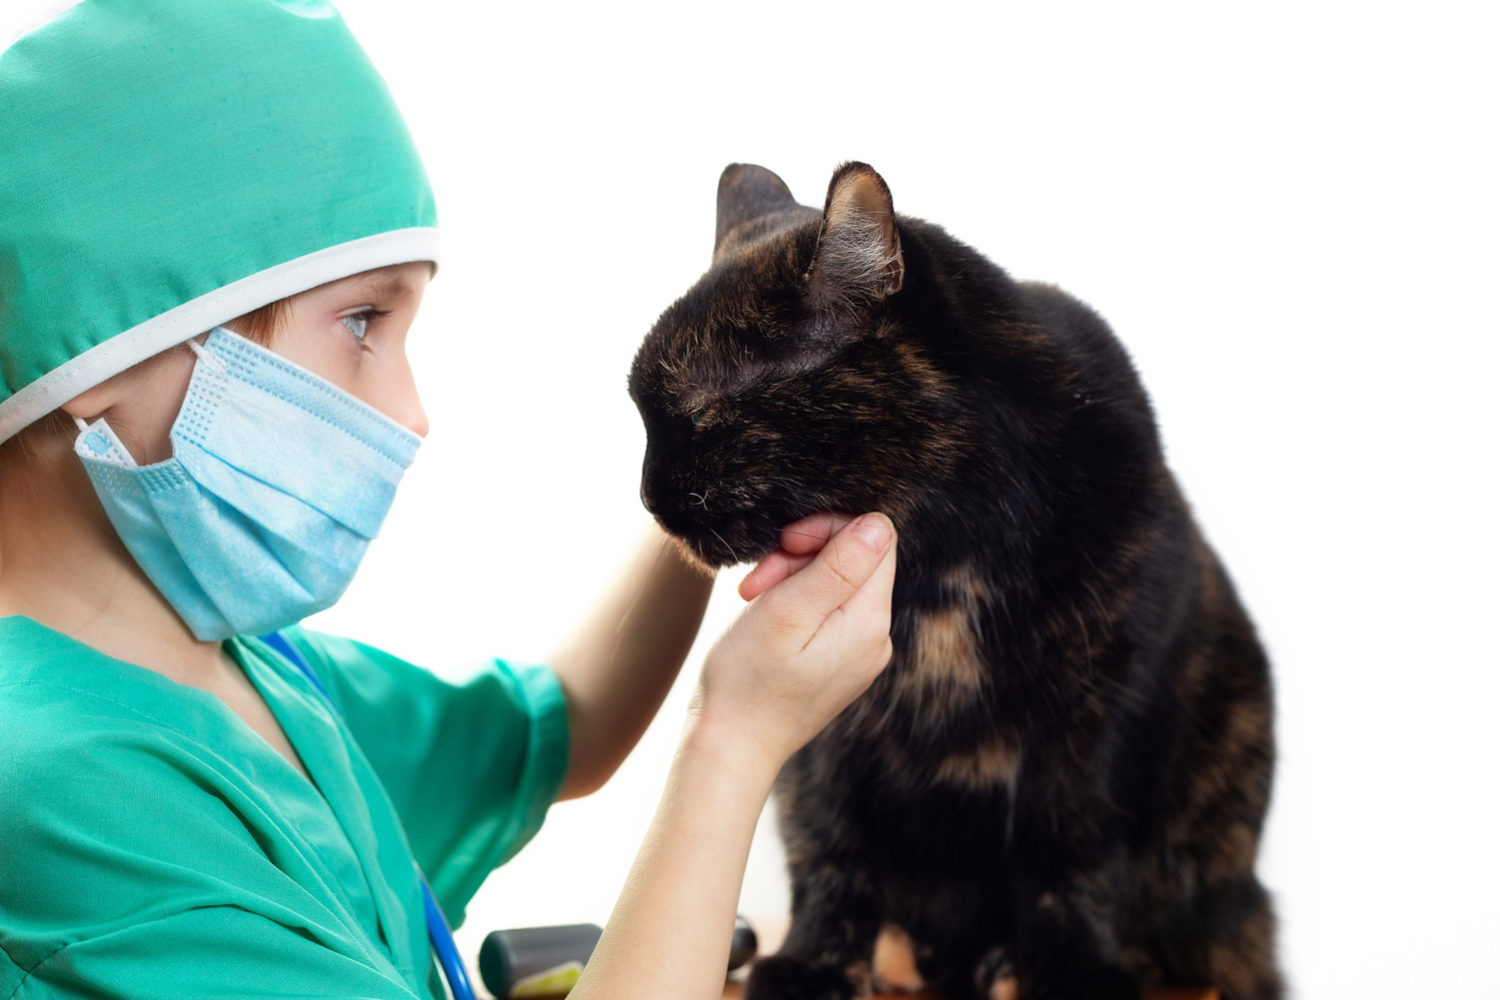 AXON COMUNICACION, Fibrosis estenosante de tráquea cervical por avulsión parcial en un gato